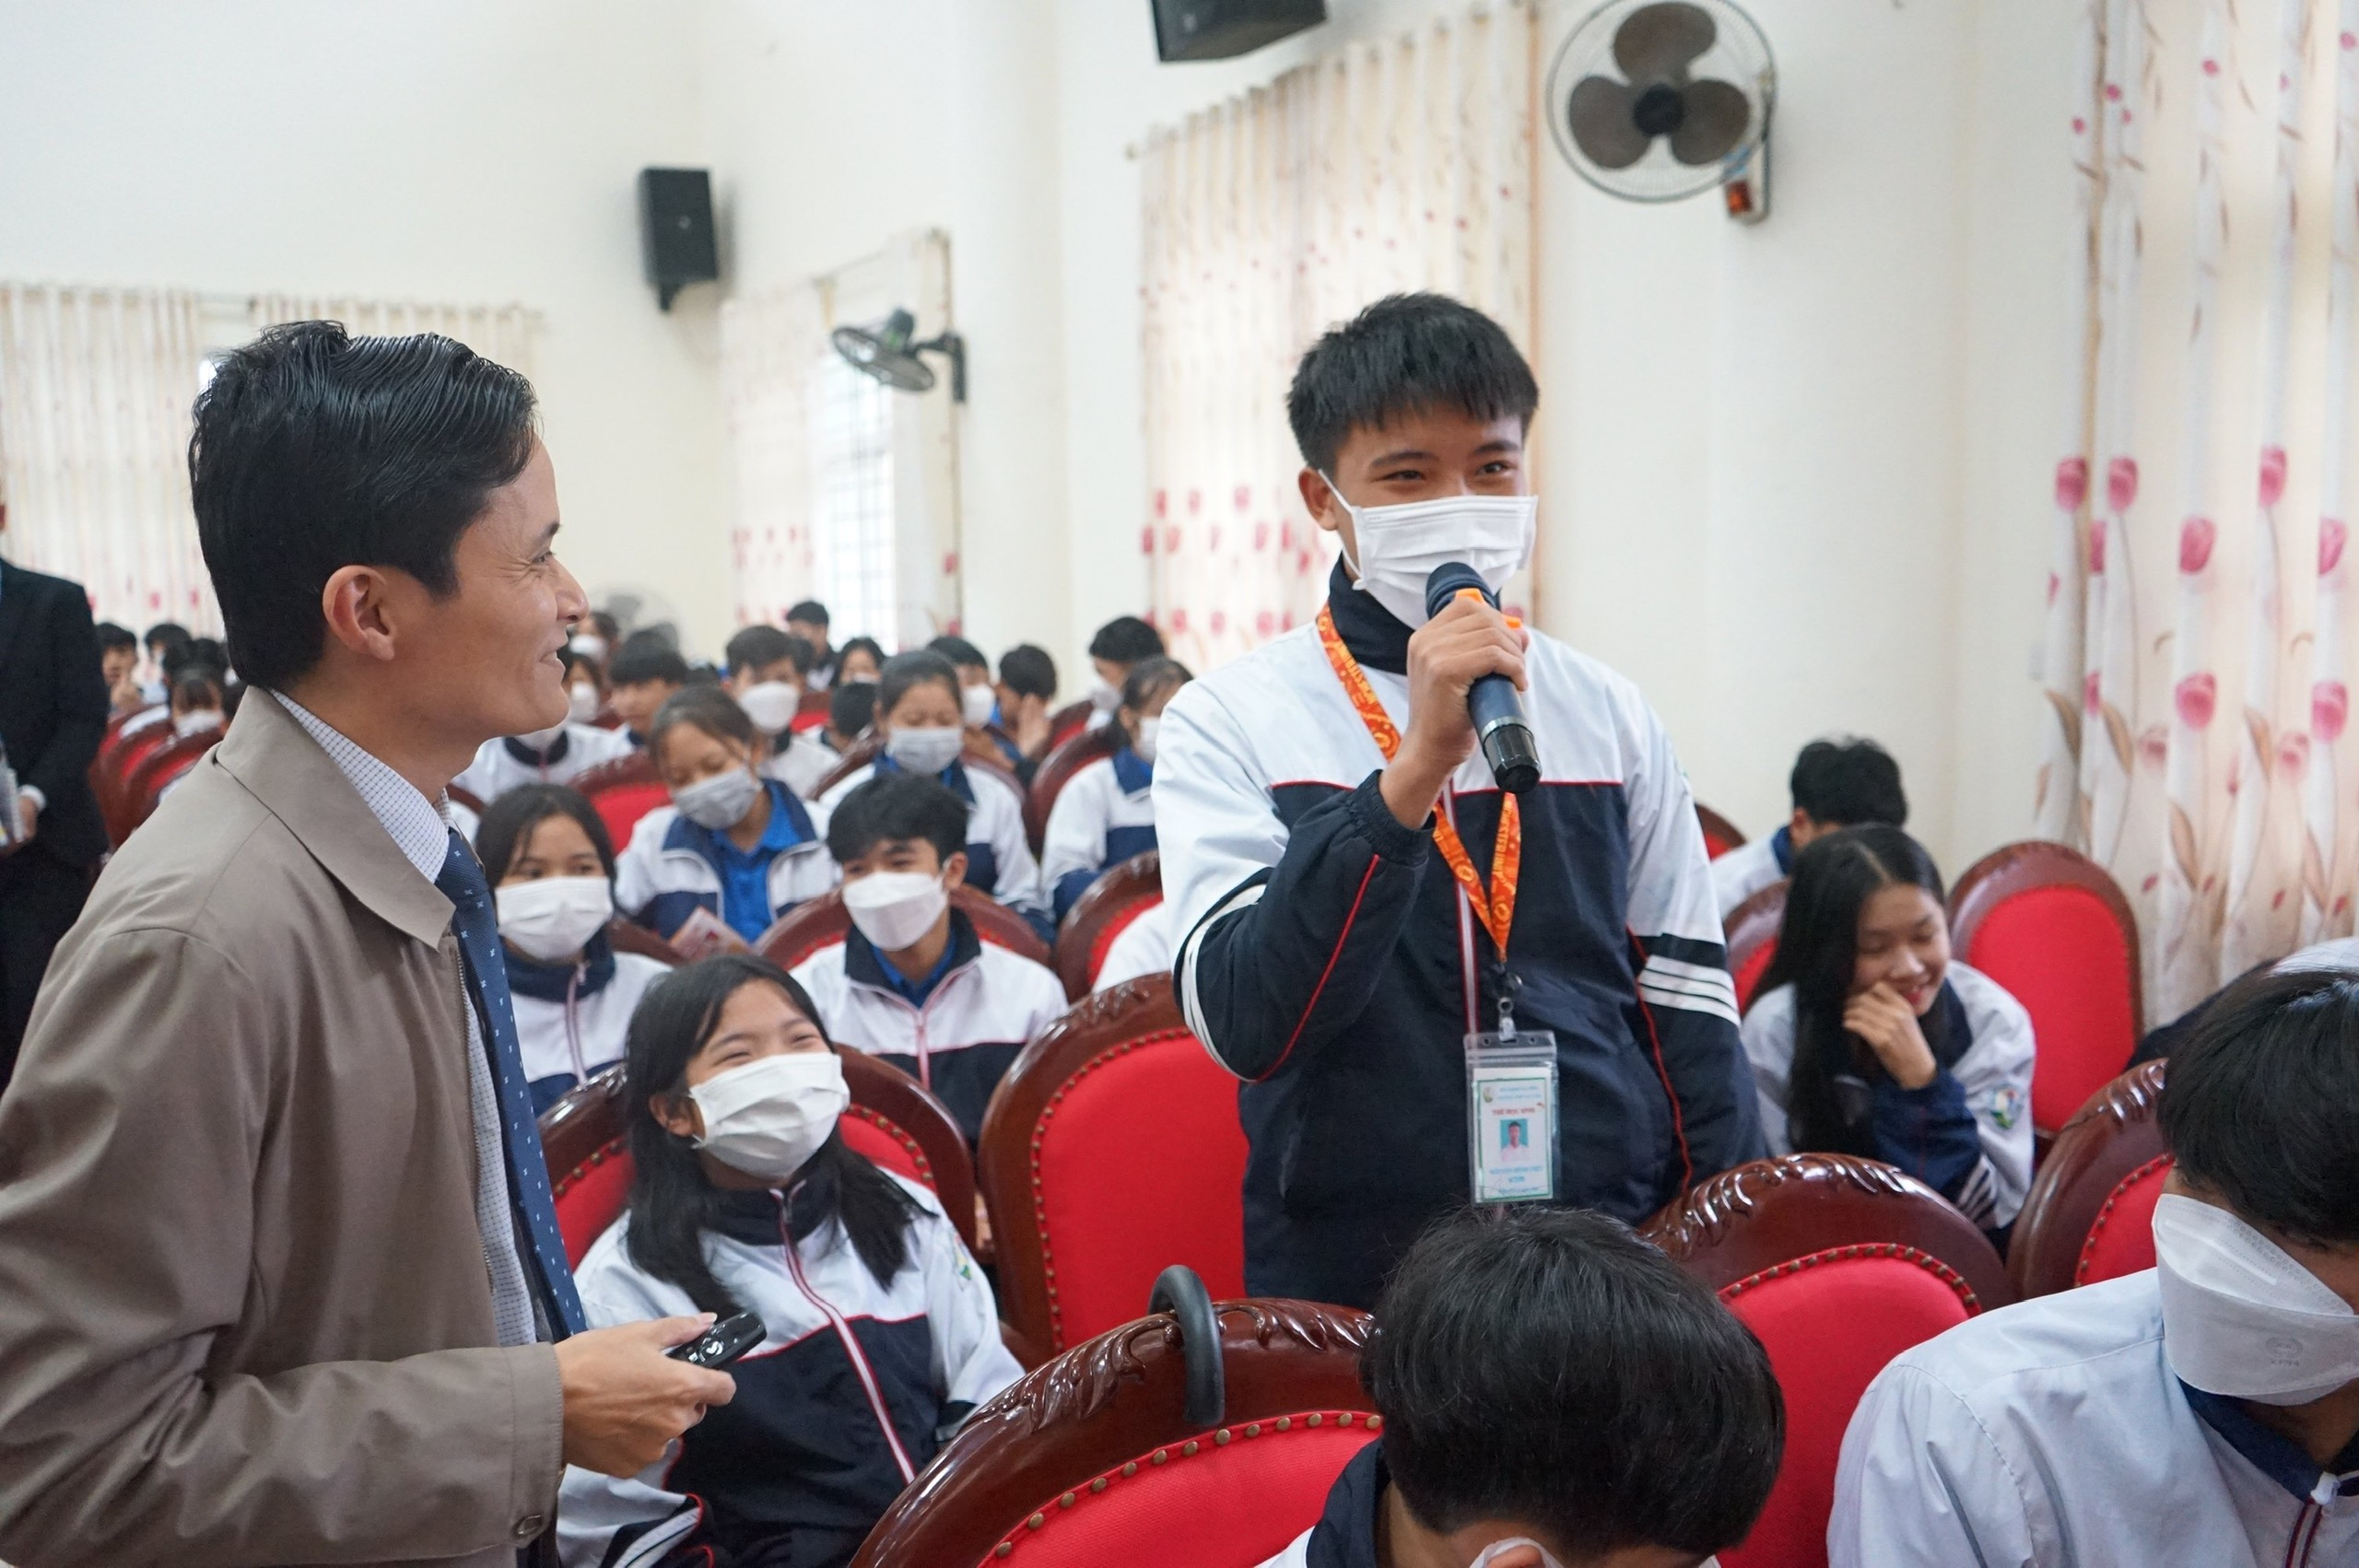 Nâng cao nhận thức kỹ năng sử dụng mạng xã hội và ATTT mạng cho giáo viên, học sinh trường THPT Kỳ Lâm